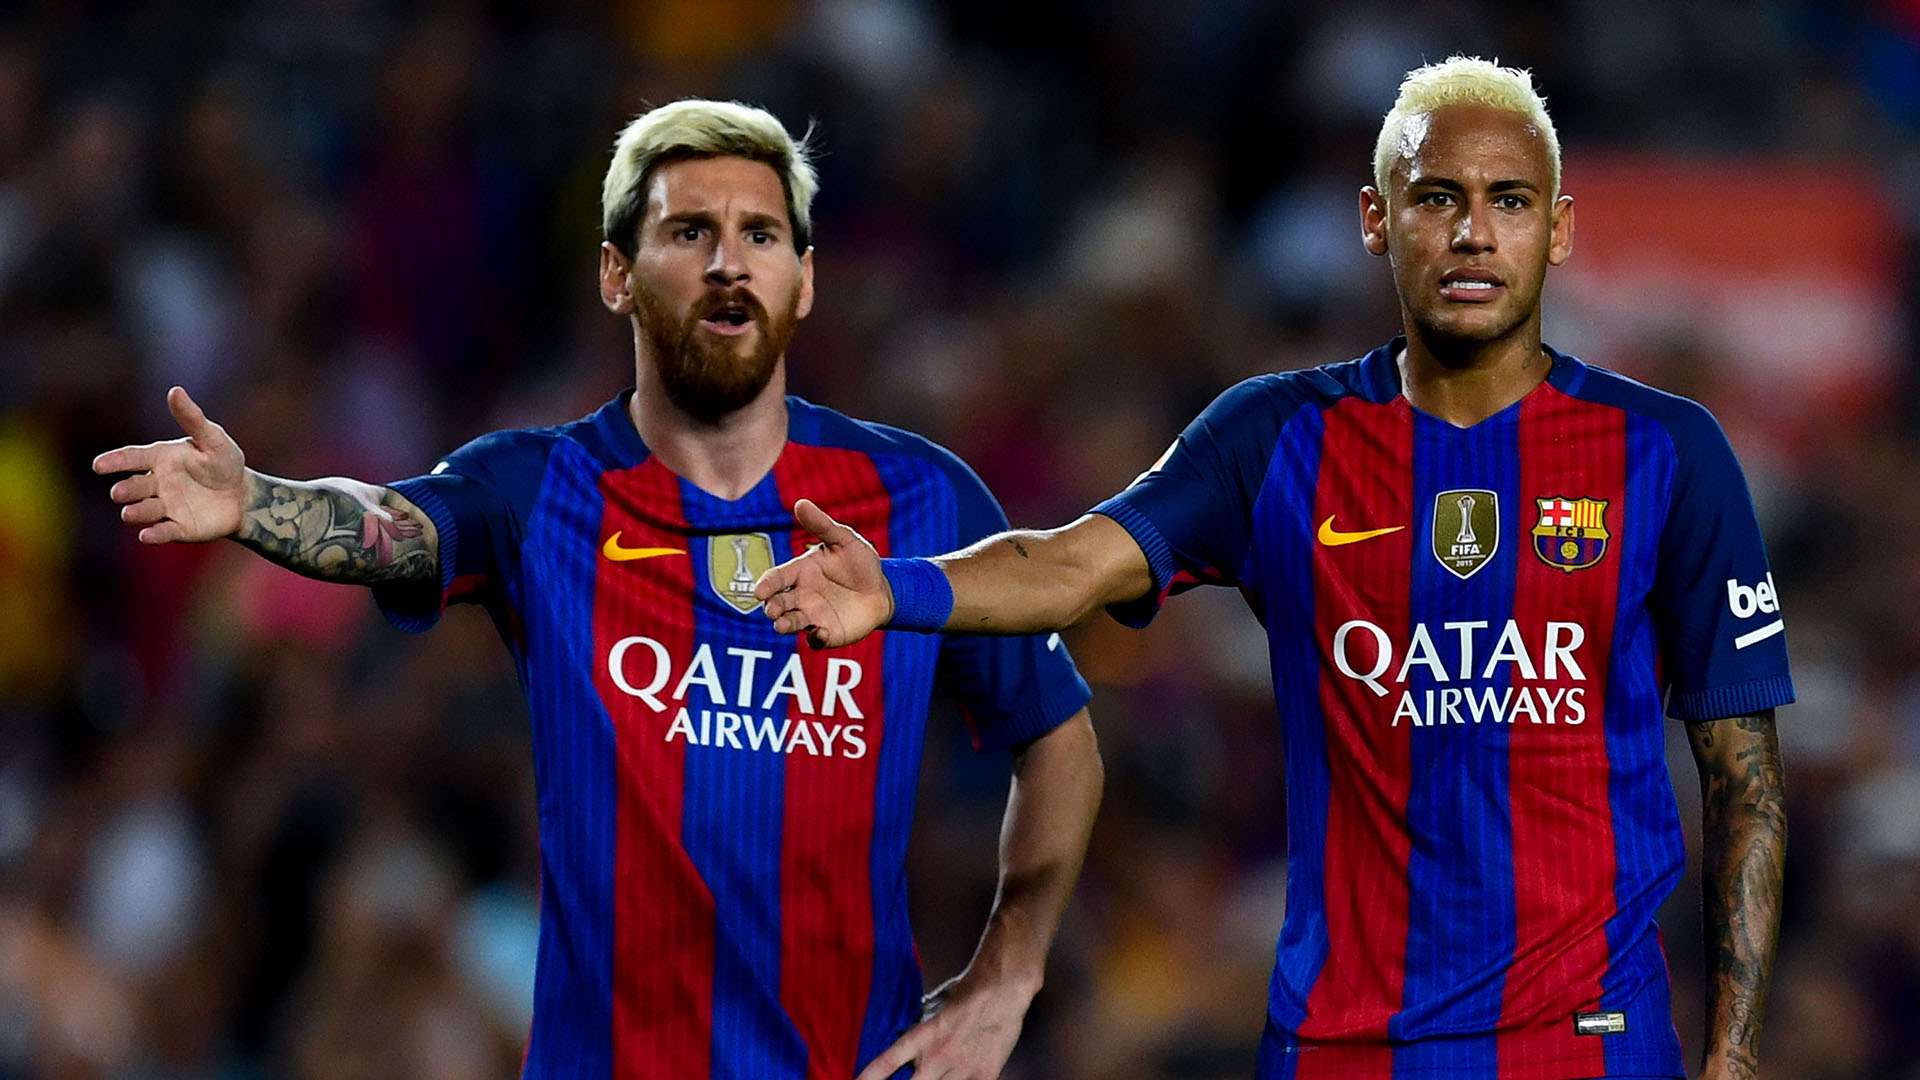 Lionel Messi n’est pas prêt de revoir Neymar, les raisons révélées